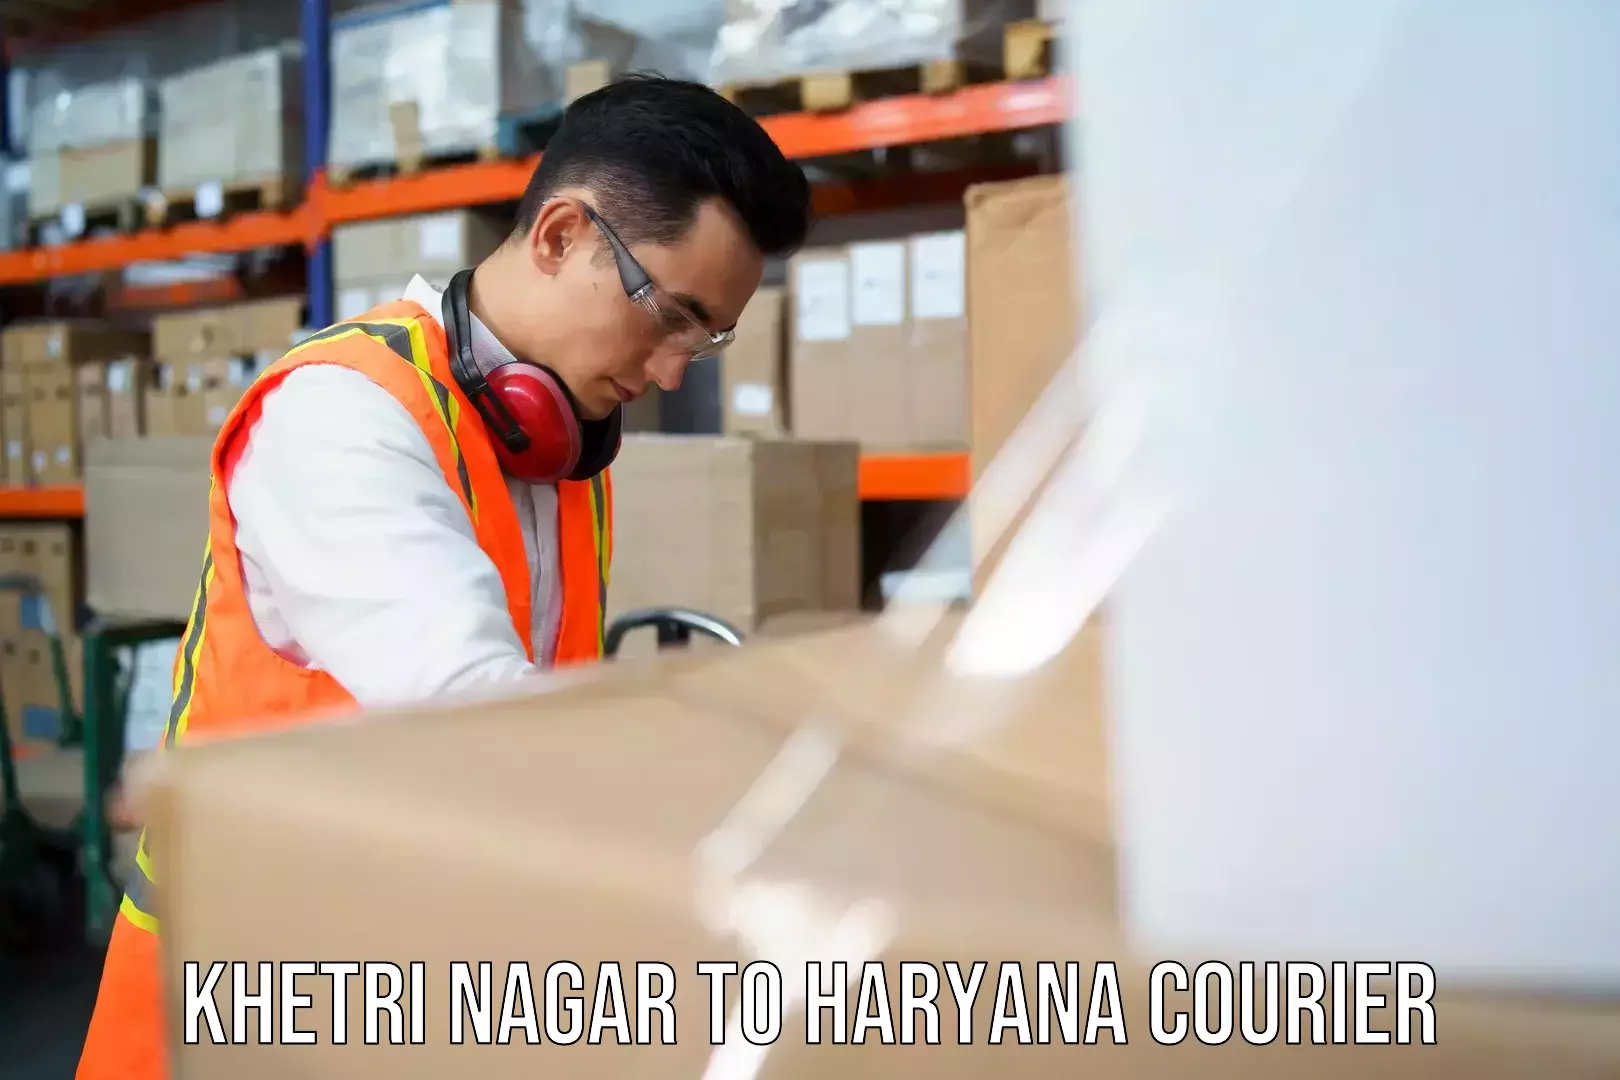 Versatile courier offerings Khetri Nagar to Haryana